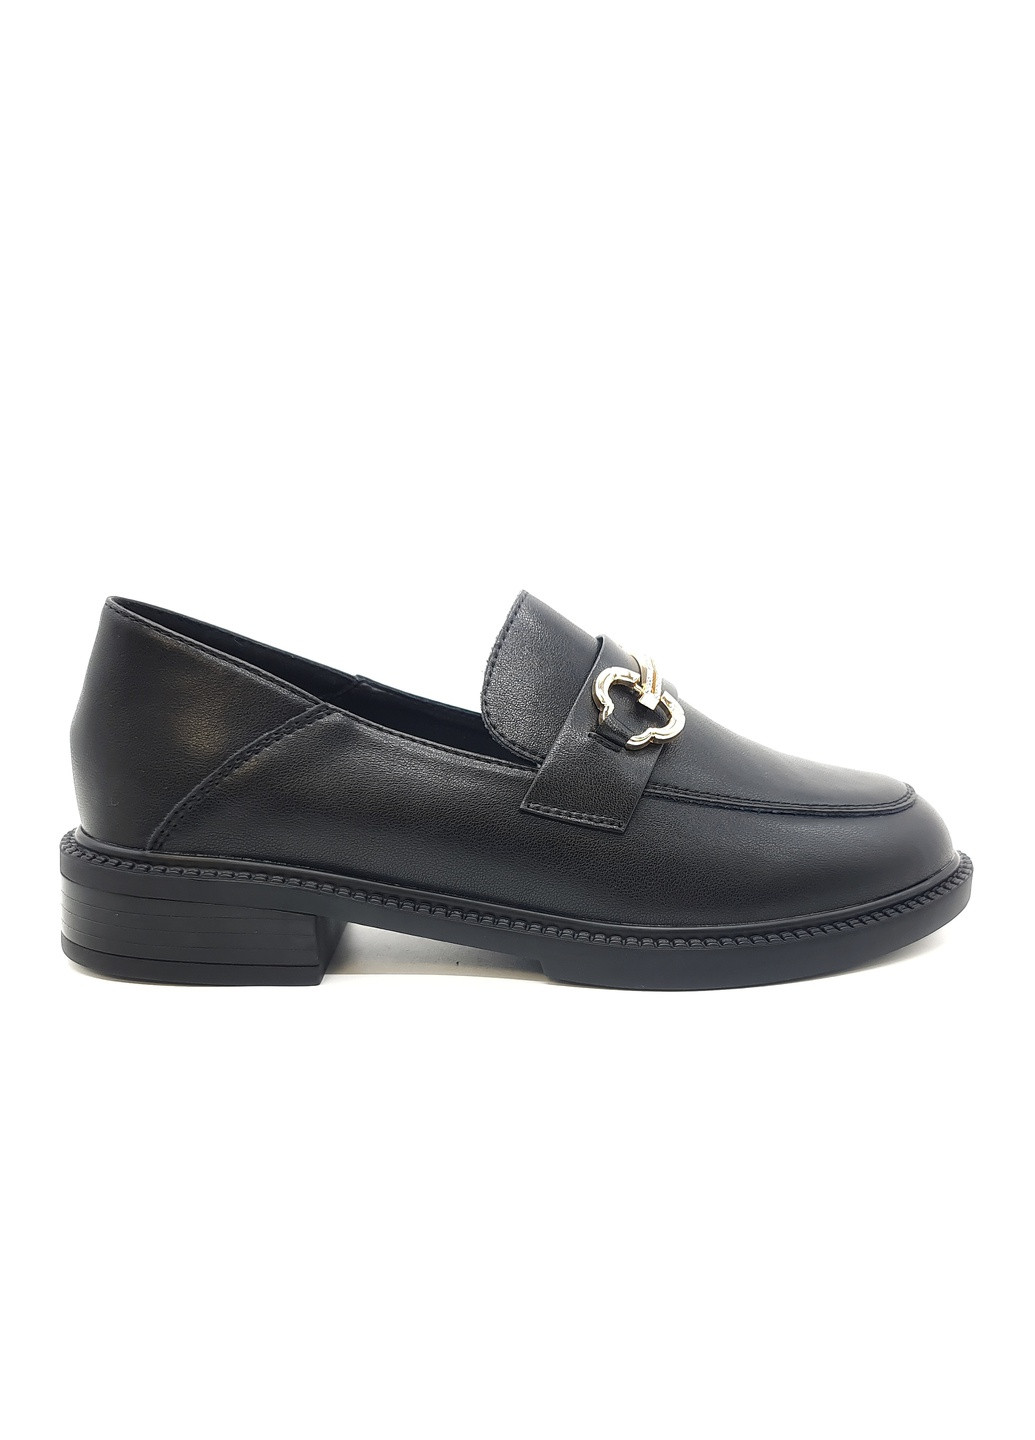 Женские туфли черные кожаные YA-18-1 23 см(р) Yalasou